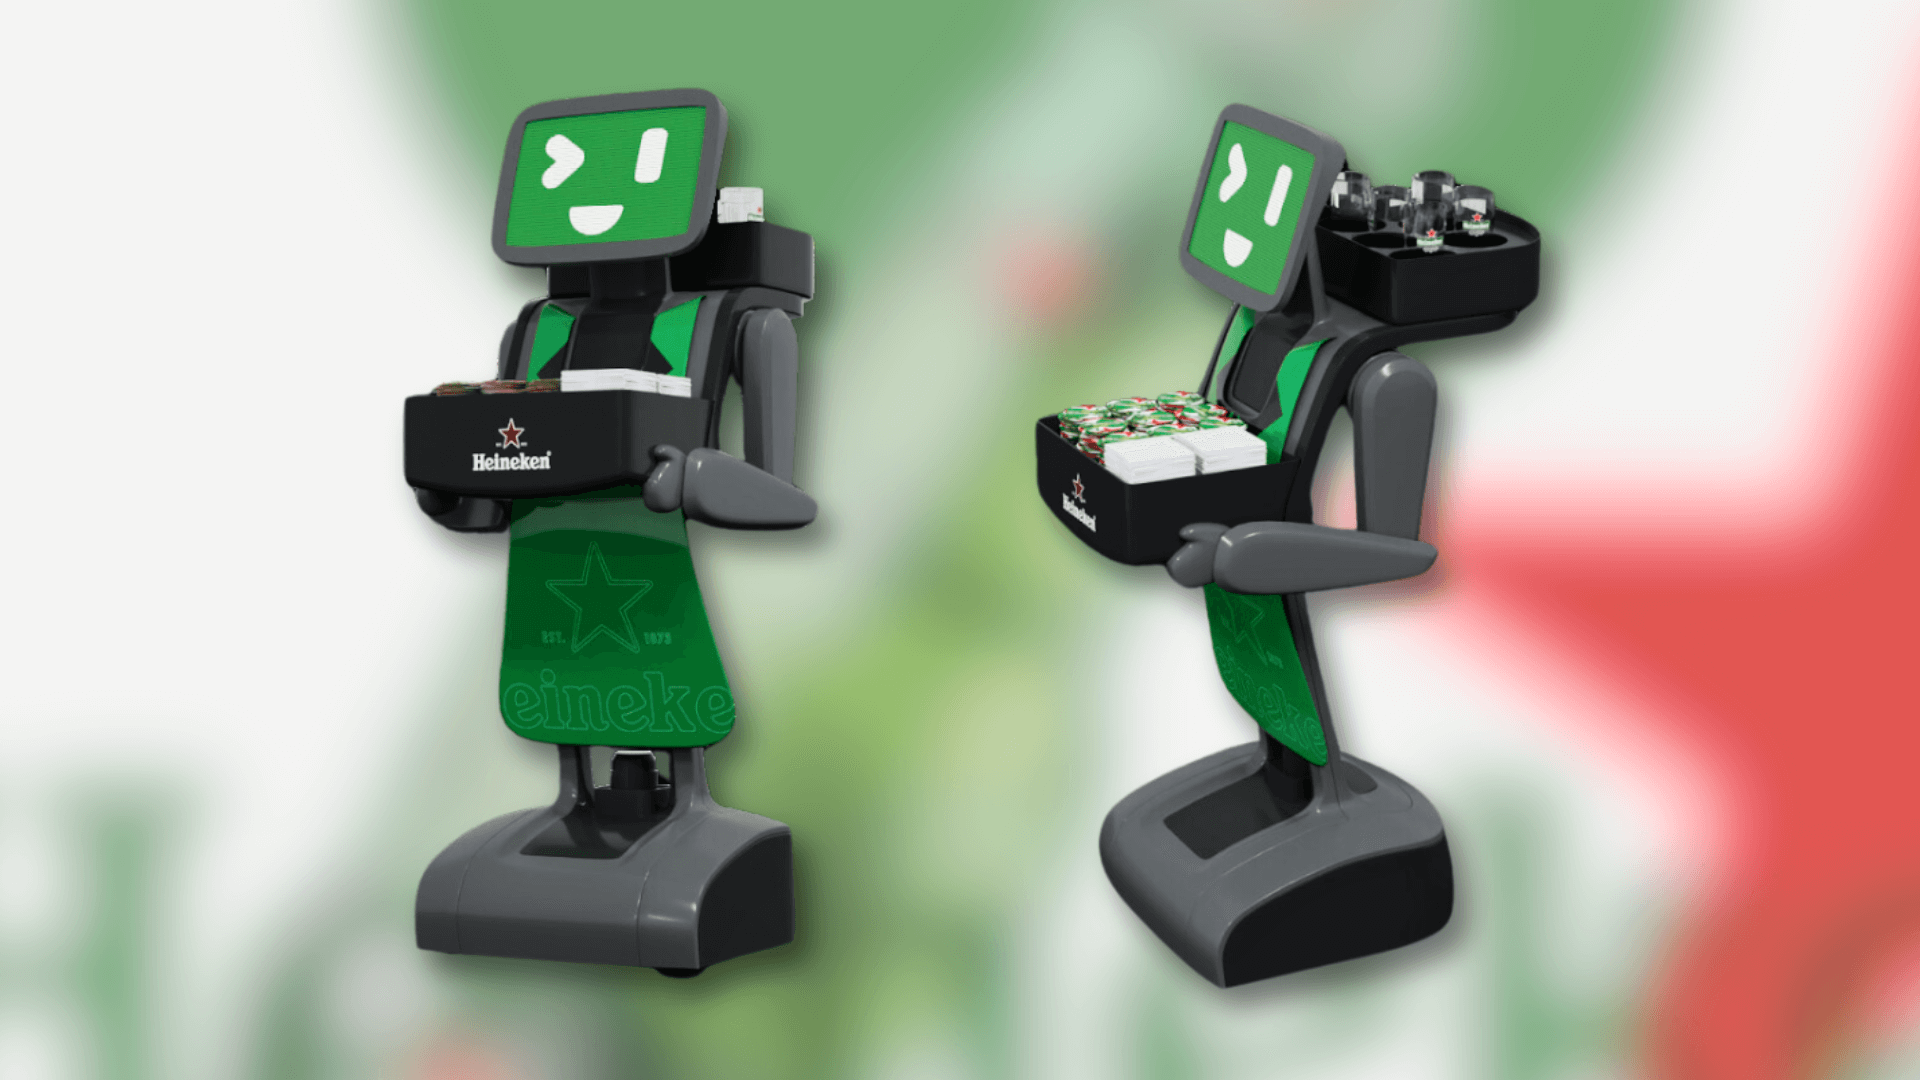 Heineken lança Hei, o robô auxiliar de garçom programado com inteligência amigável